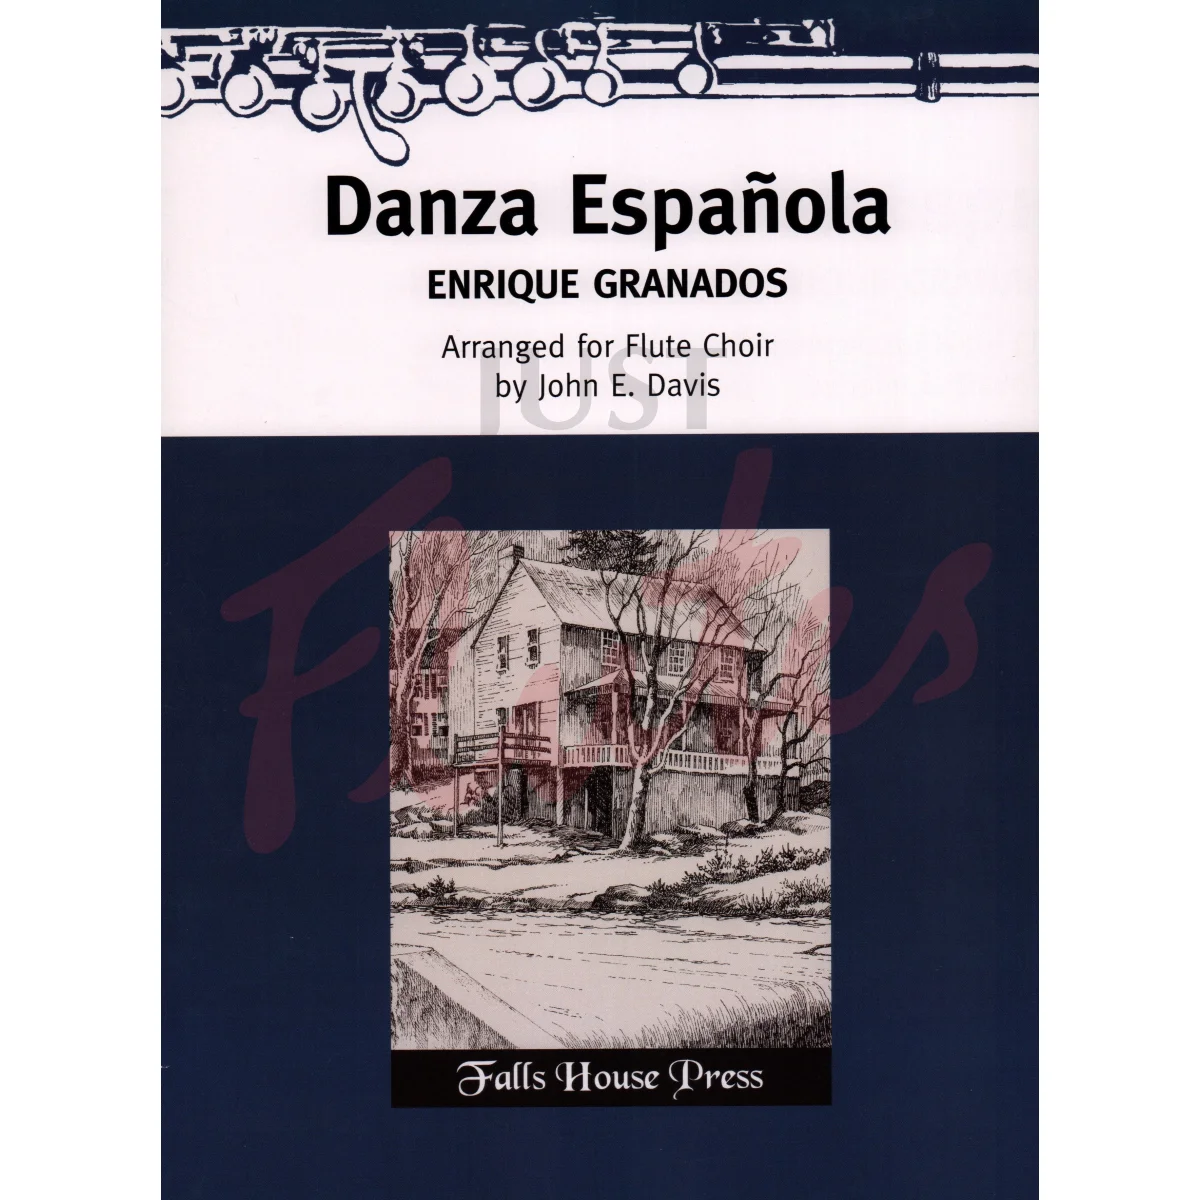 Danza Española for Flute Choir